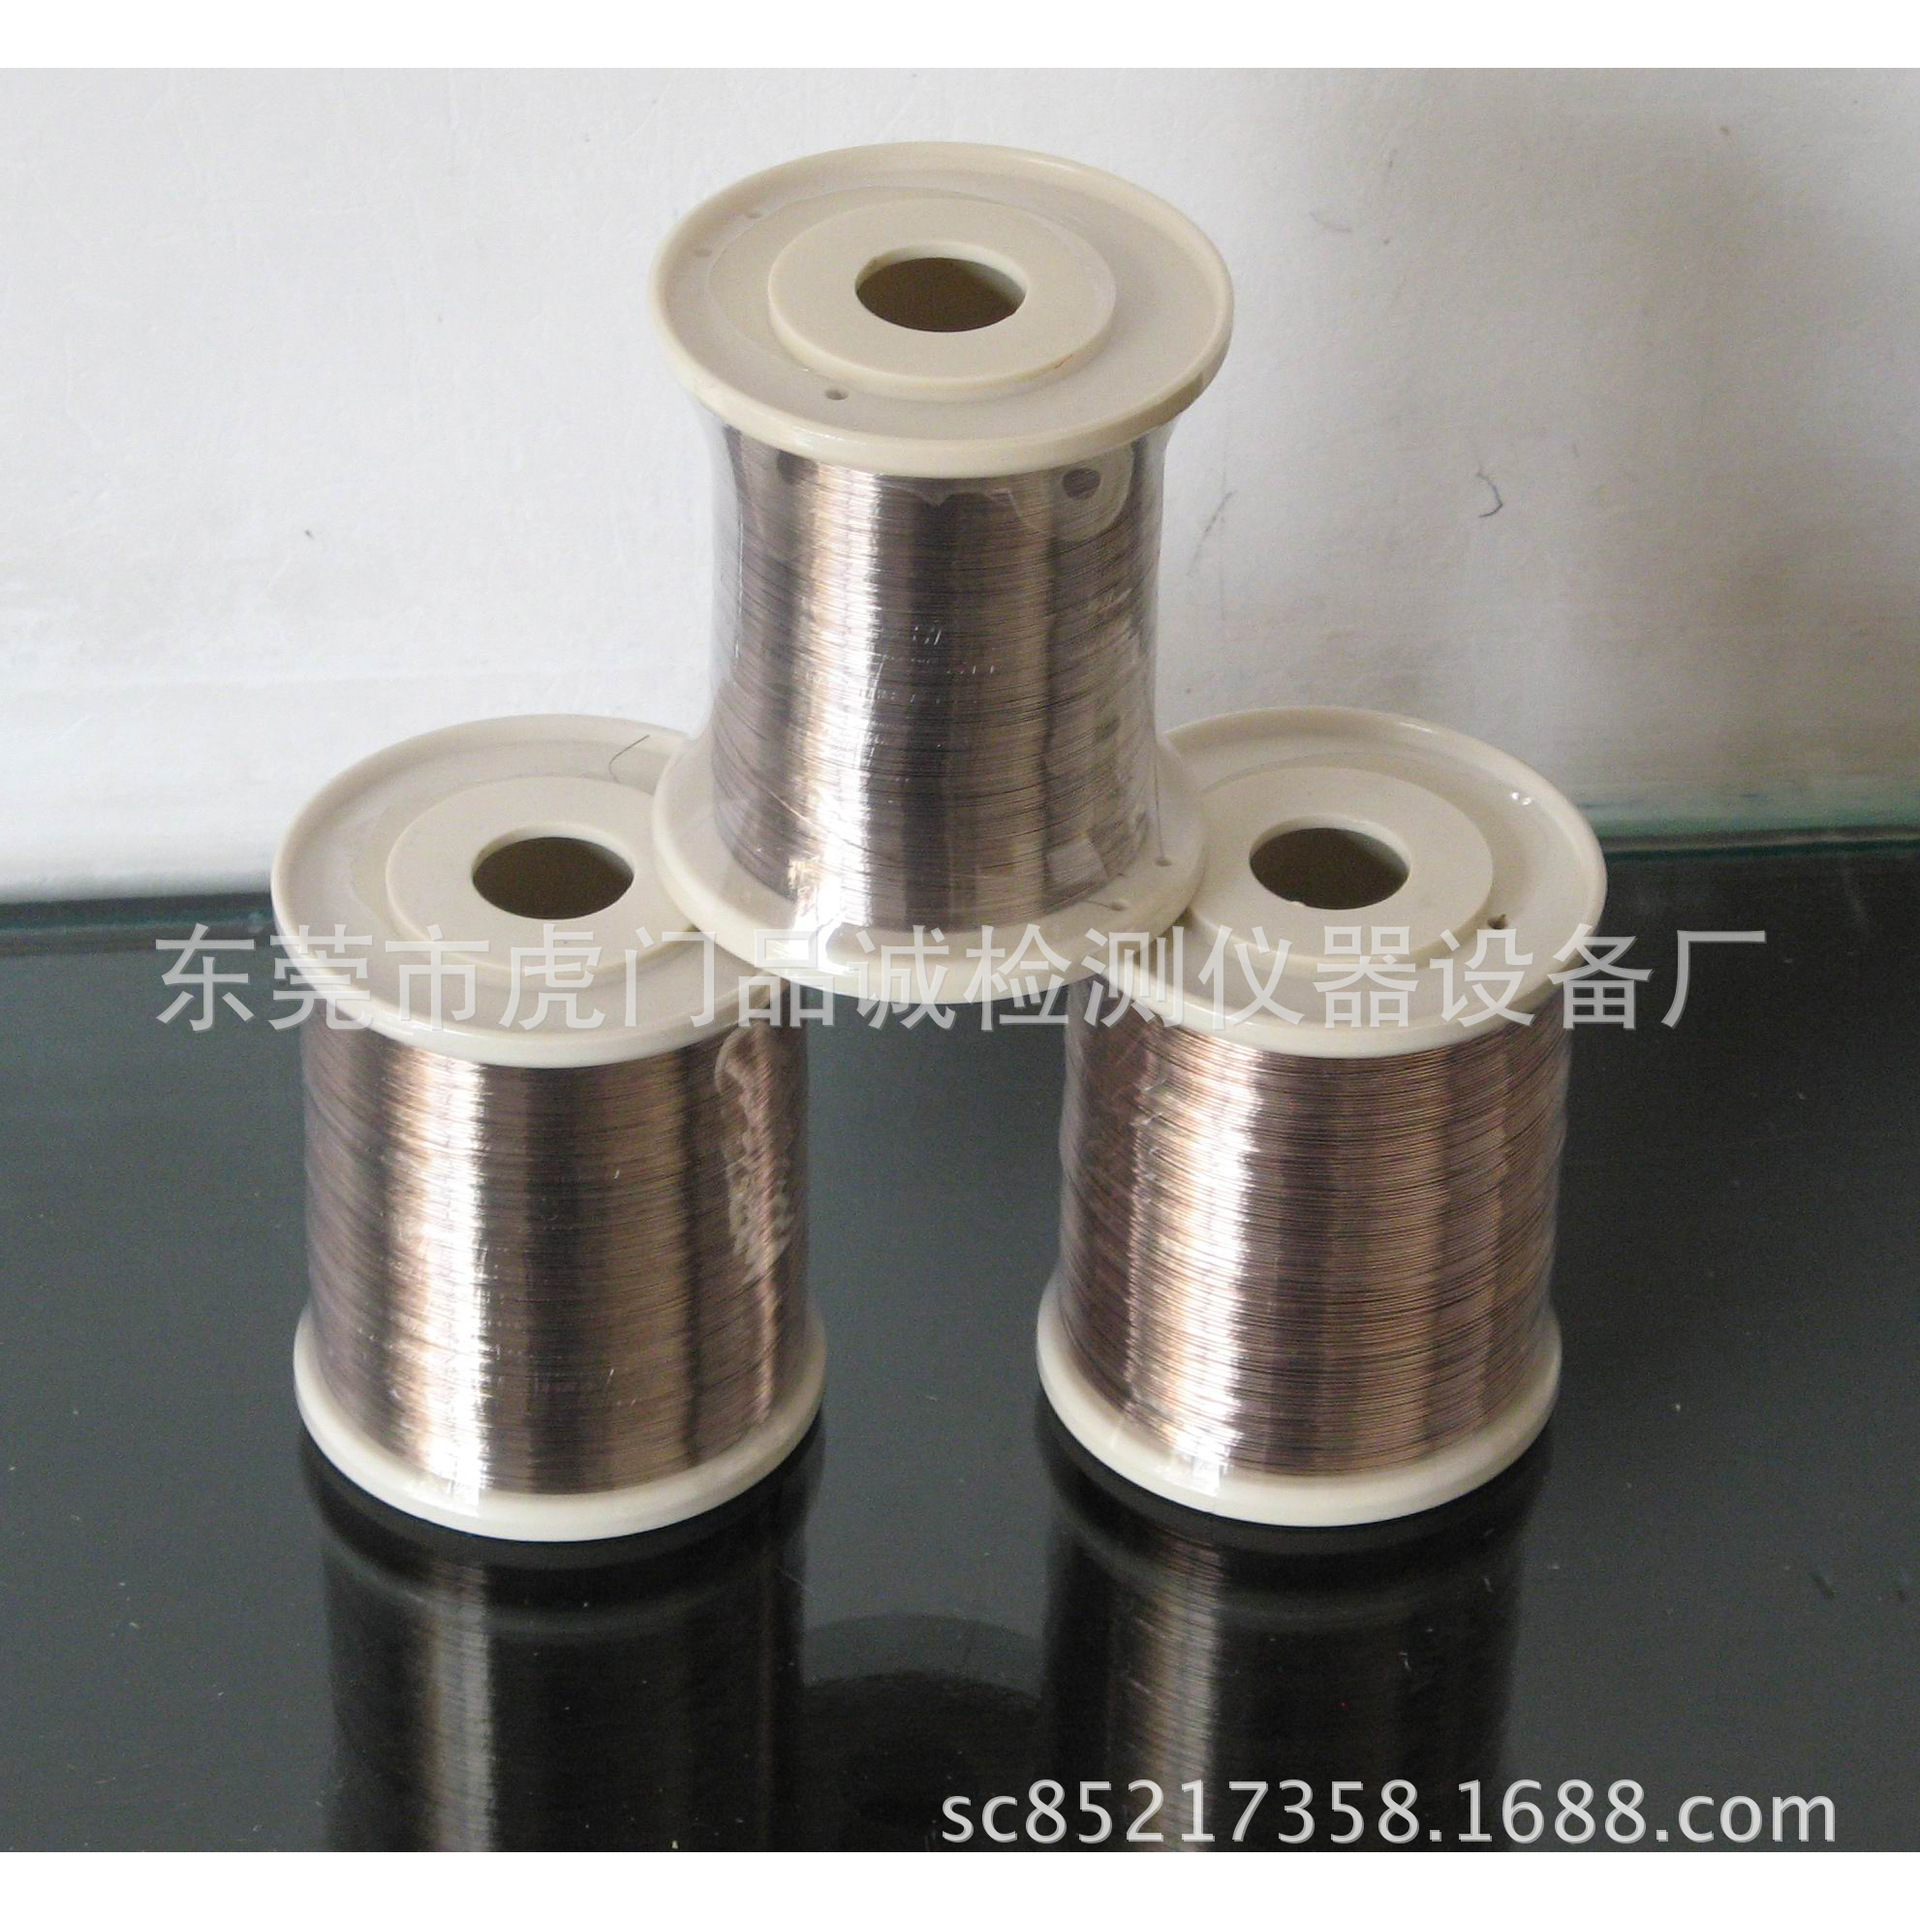 广东特价银焊丝 铜线专用银焊丝 0.2mm银焊丝 0.5mm银焊丝示例图3